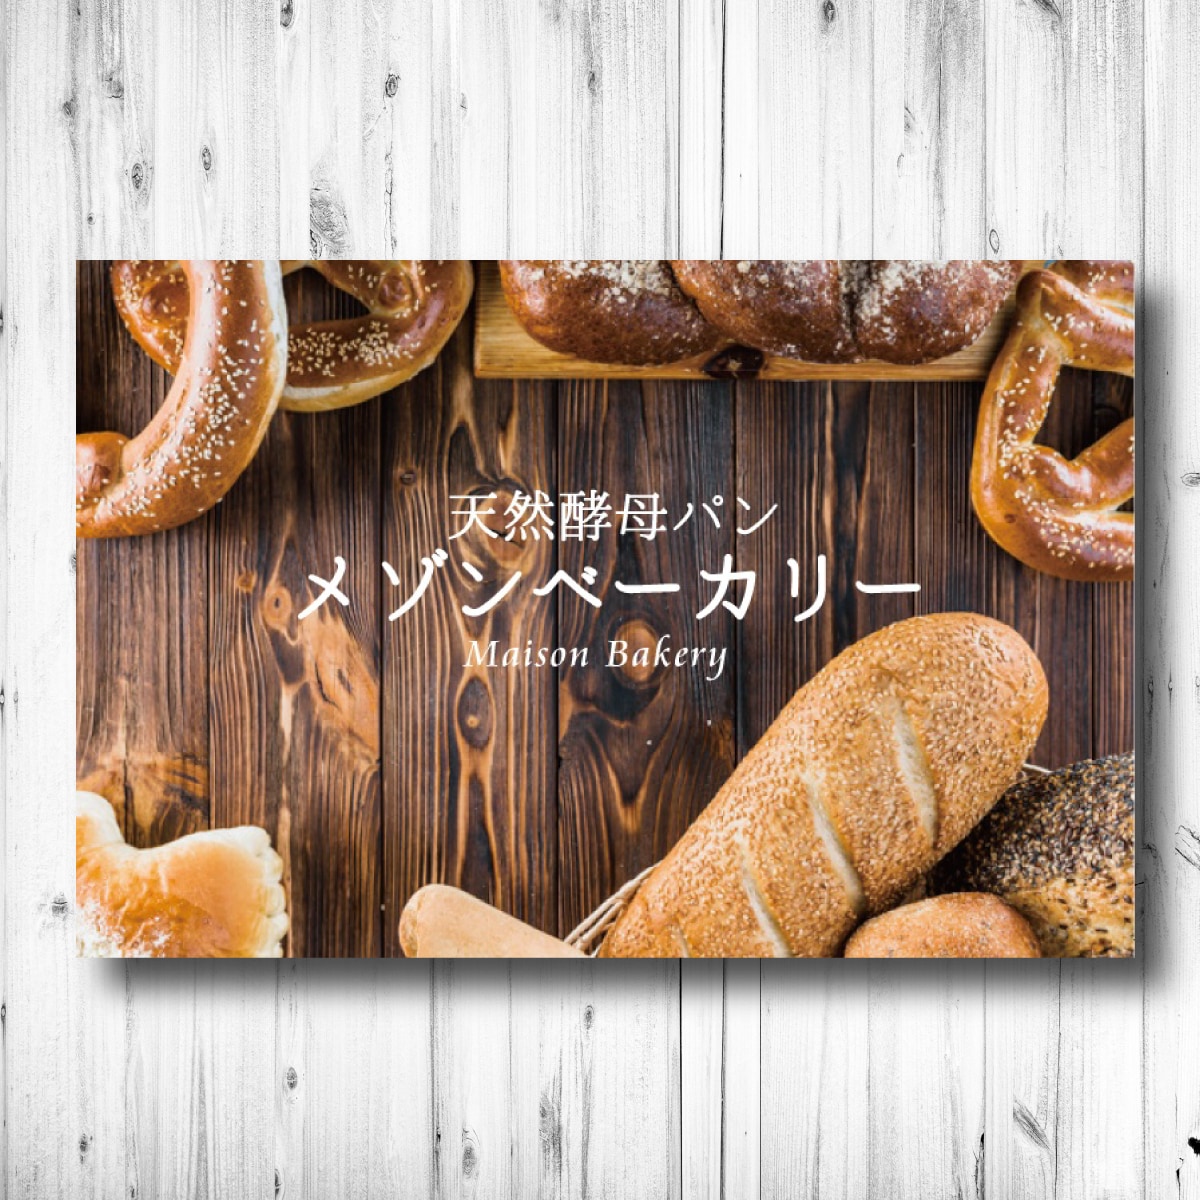 パン屋のショップカードデザイン制作